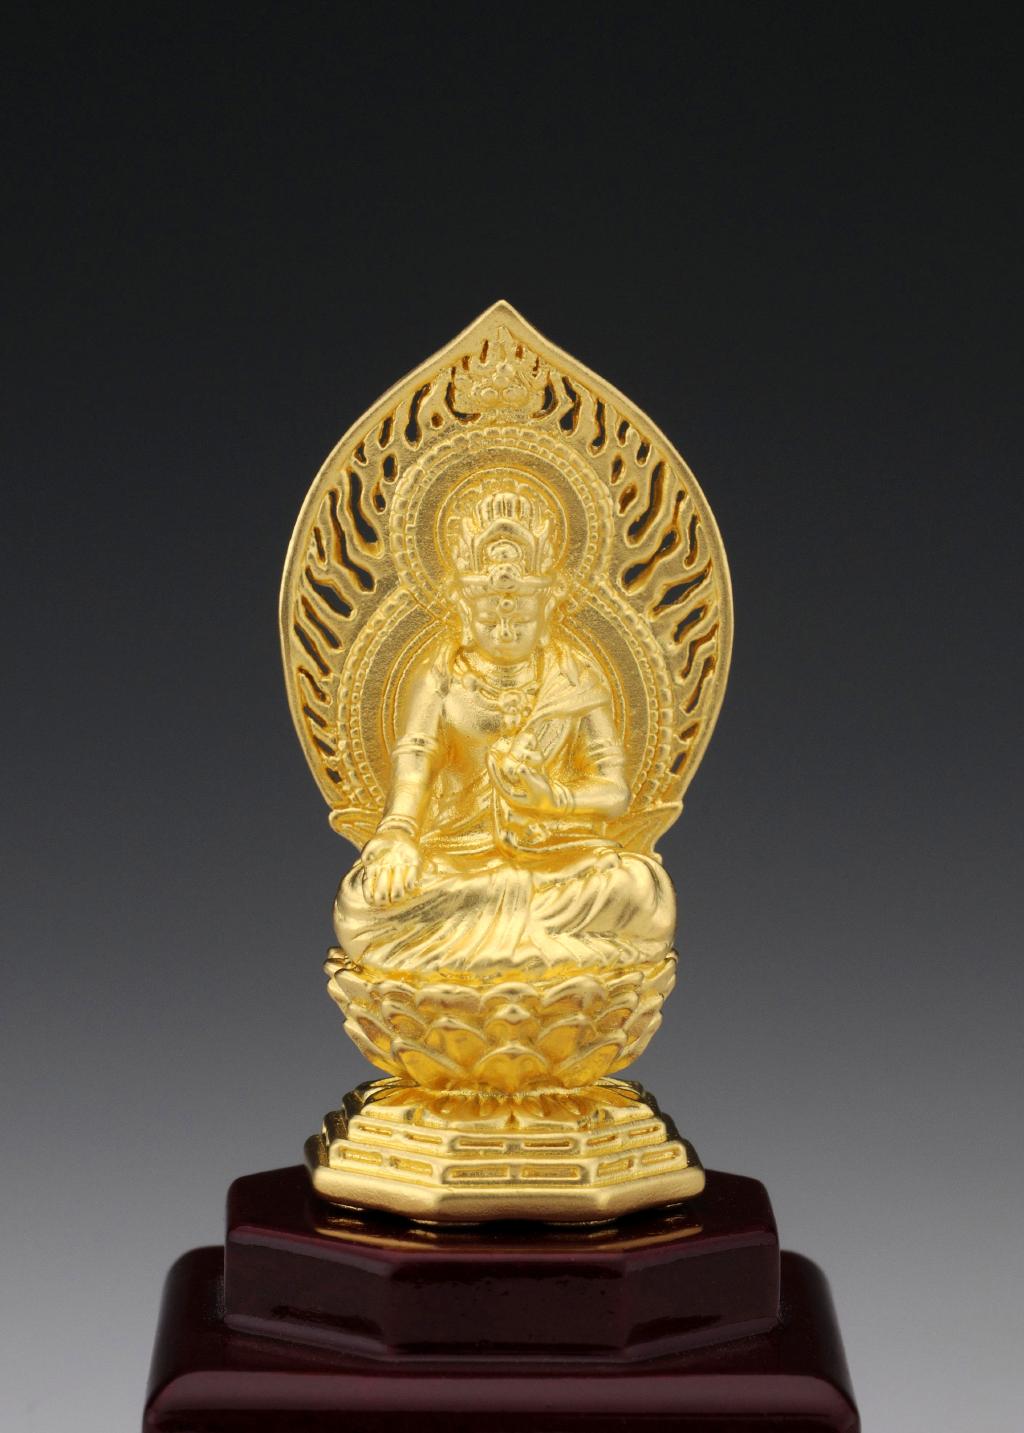 仏像 虚空蔵菩薩 純金製 ケース付き 日本の手技 純金製御仏像 本格仏像の仏像ワールド